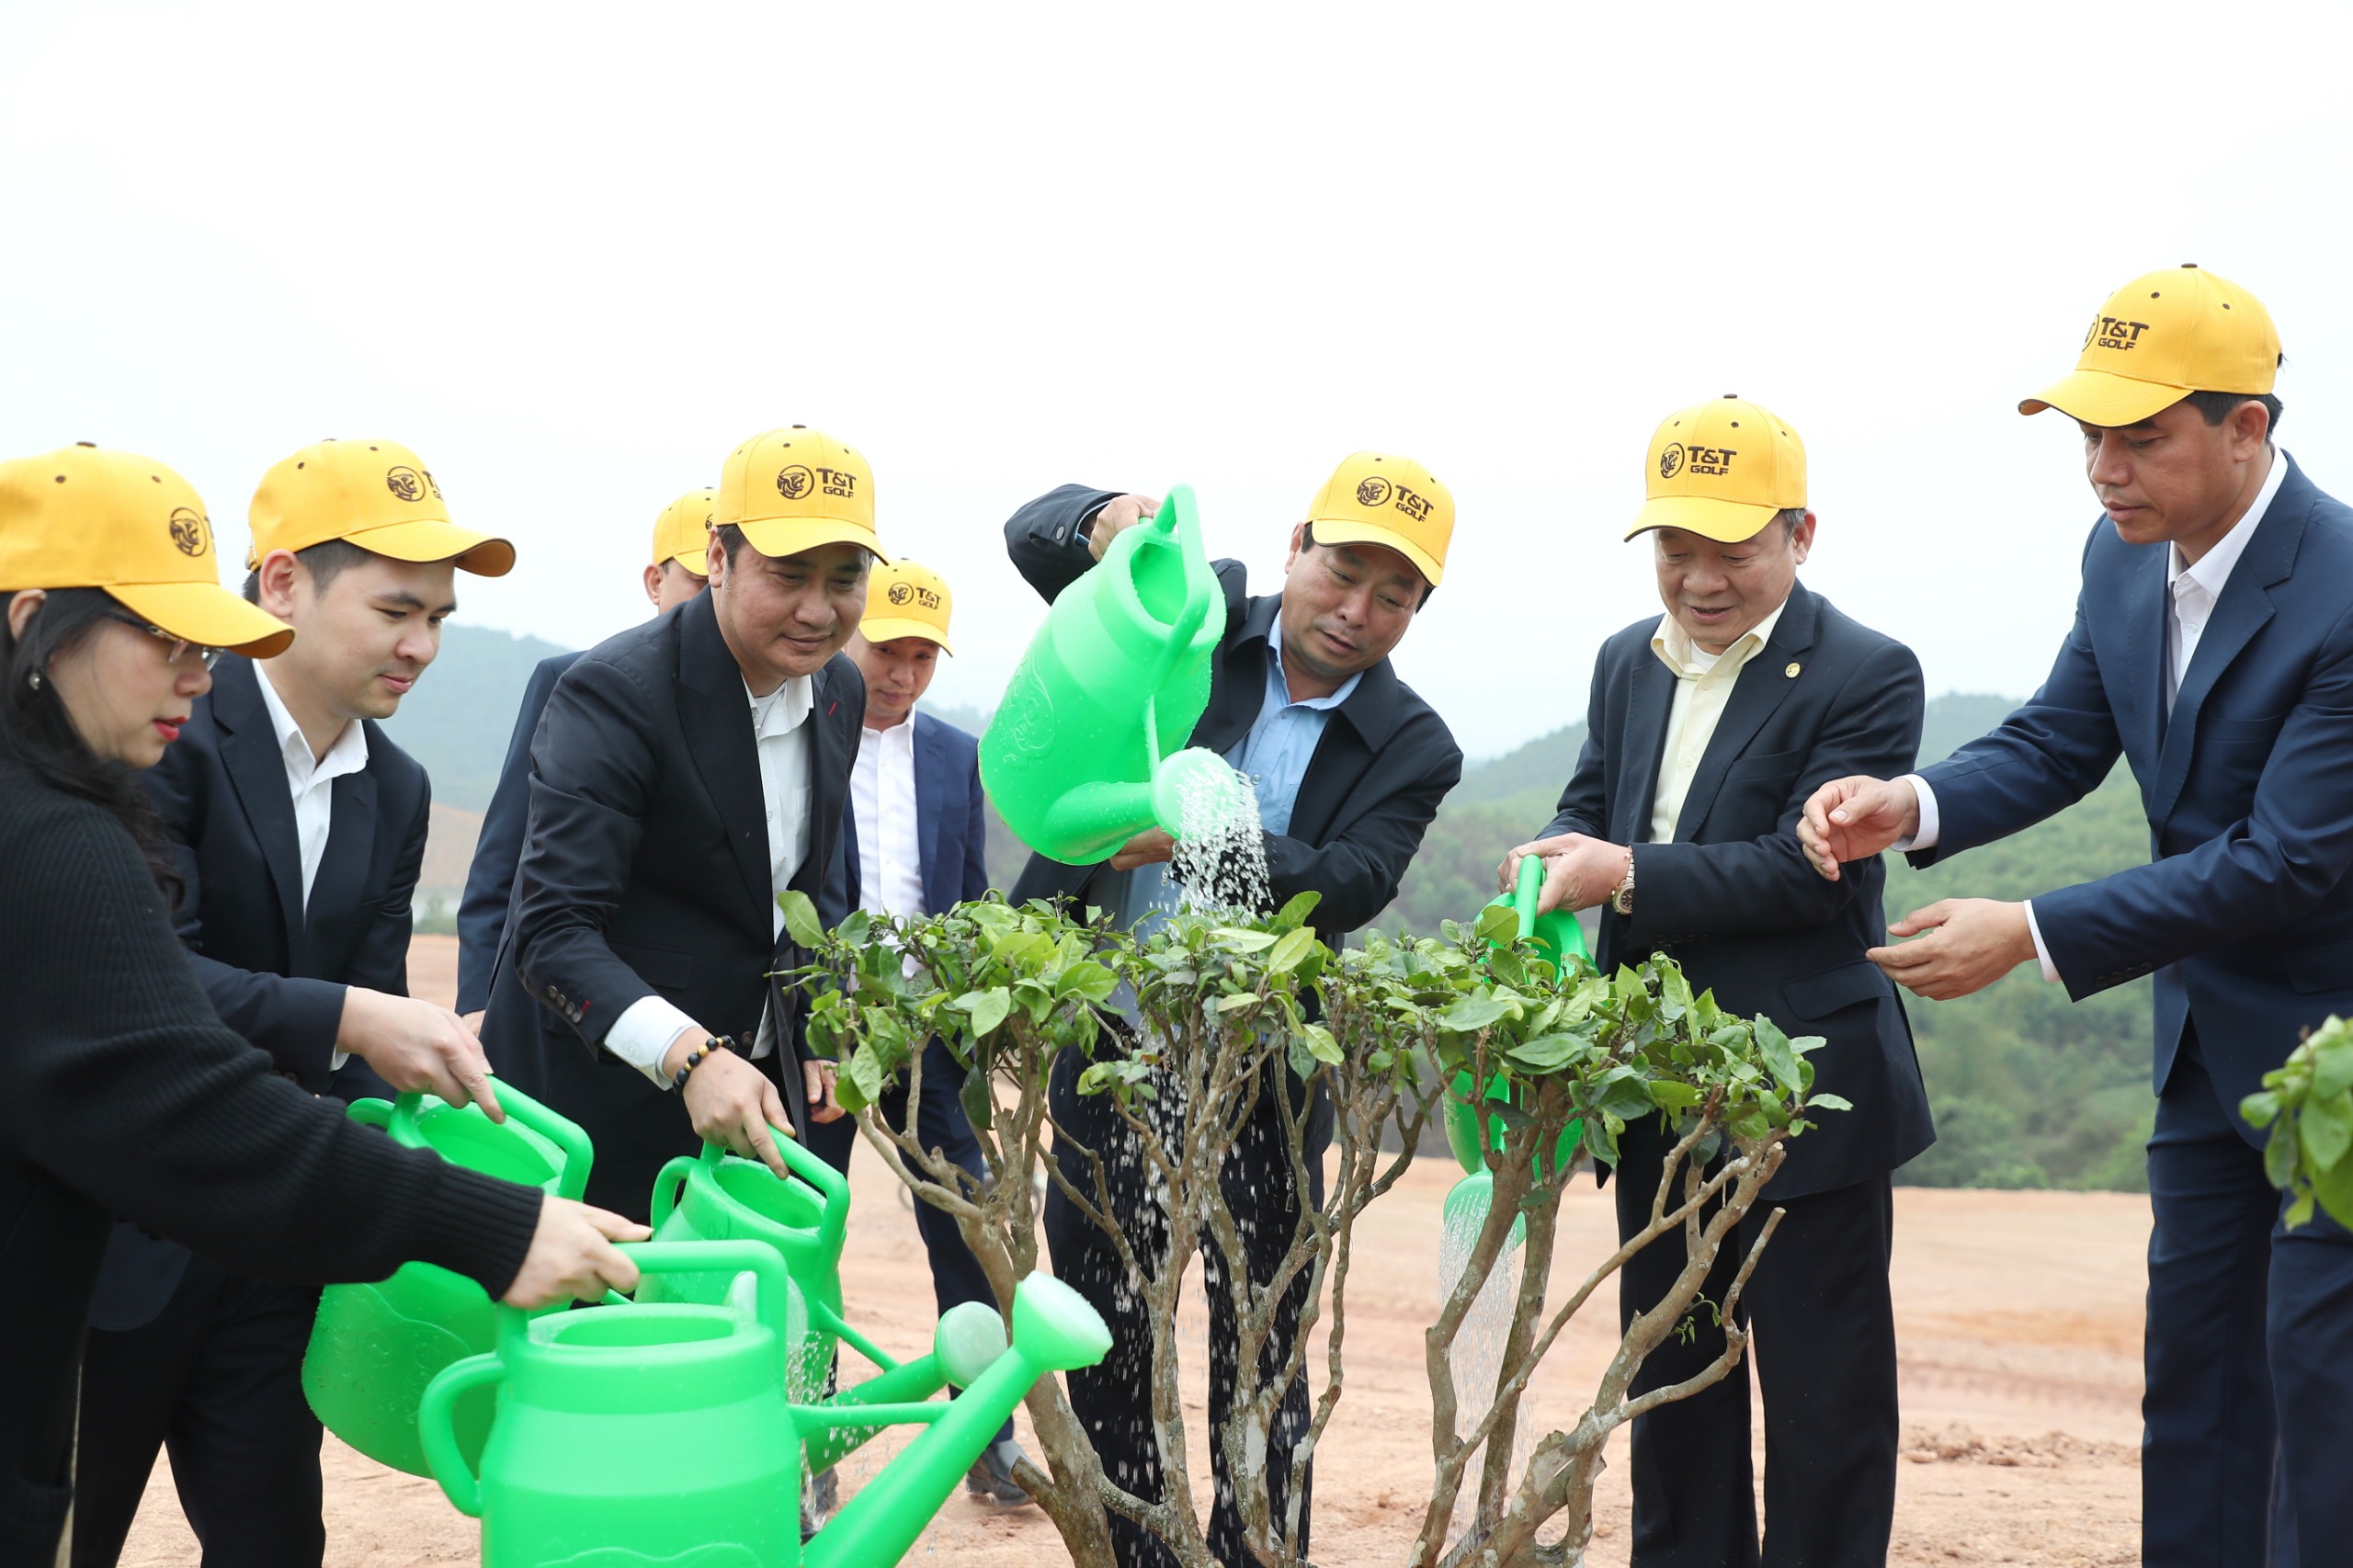 Kinh tế - Phát động trồng cây phủ xanh 16 ha dự án sân golf tại tỉnh Phú Thọ (Hình 4).